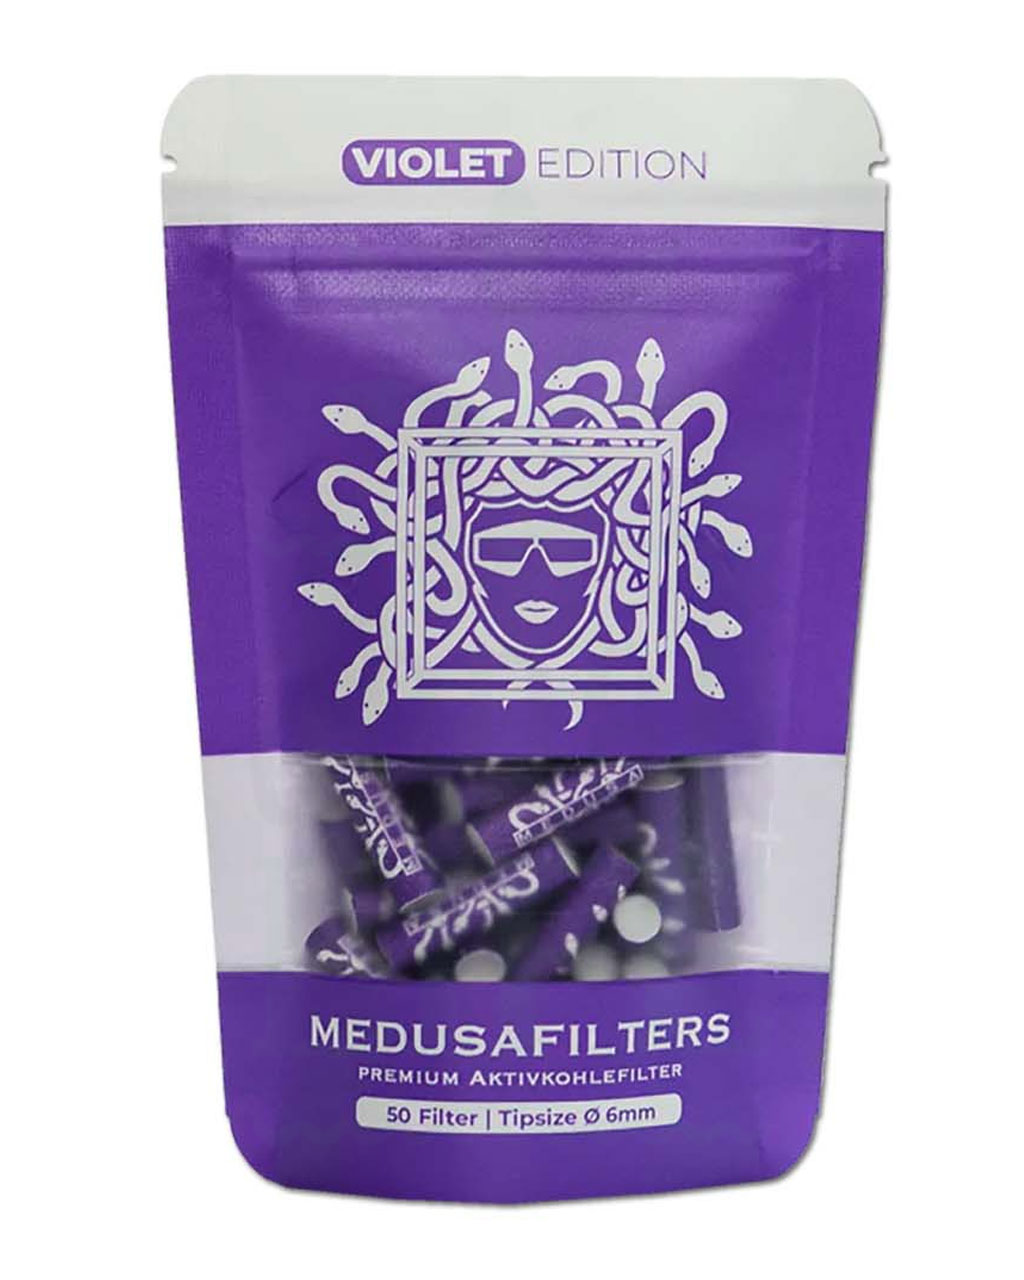 Filter & Aktivkohle MEDUSA FILTERS Aktivkohlefilter 6 mm ‘Violet Edition’ | 50 Filter